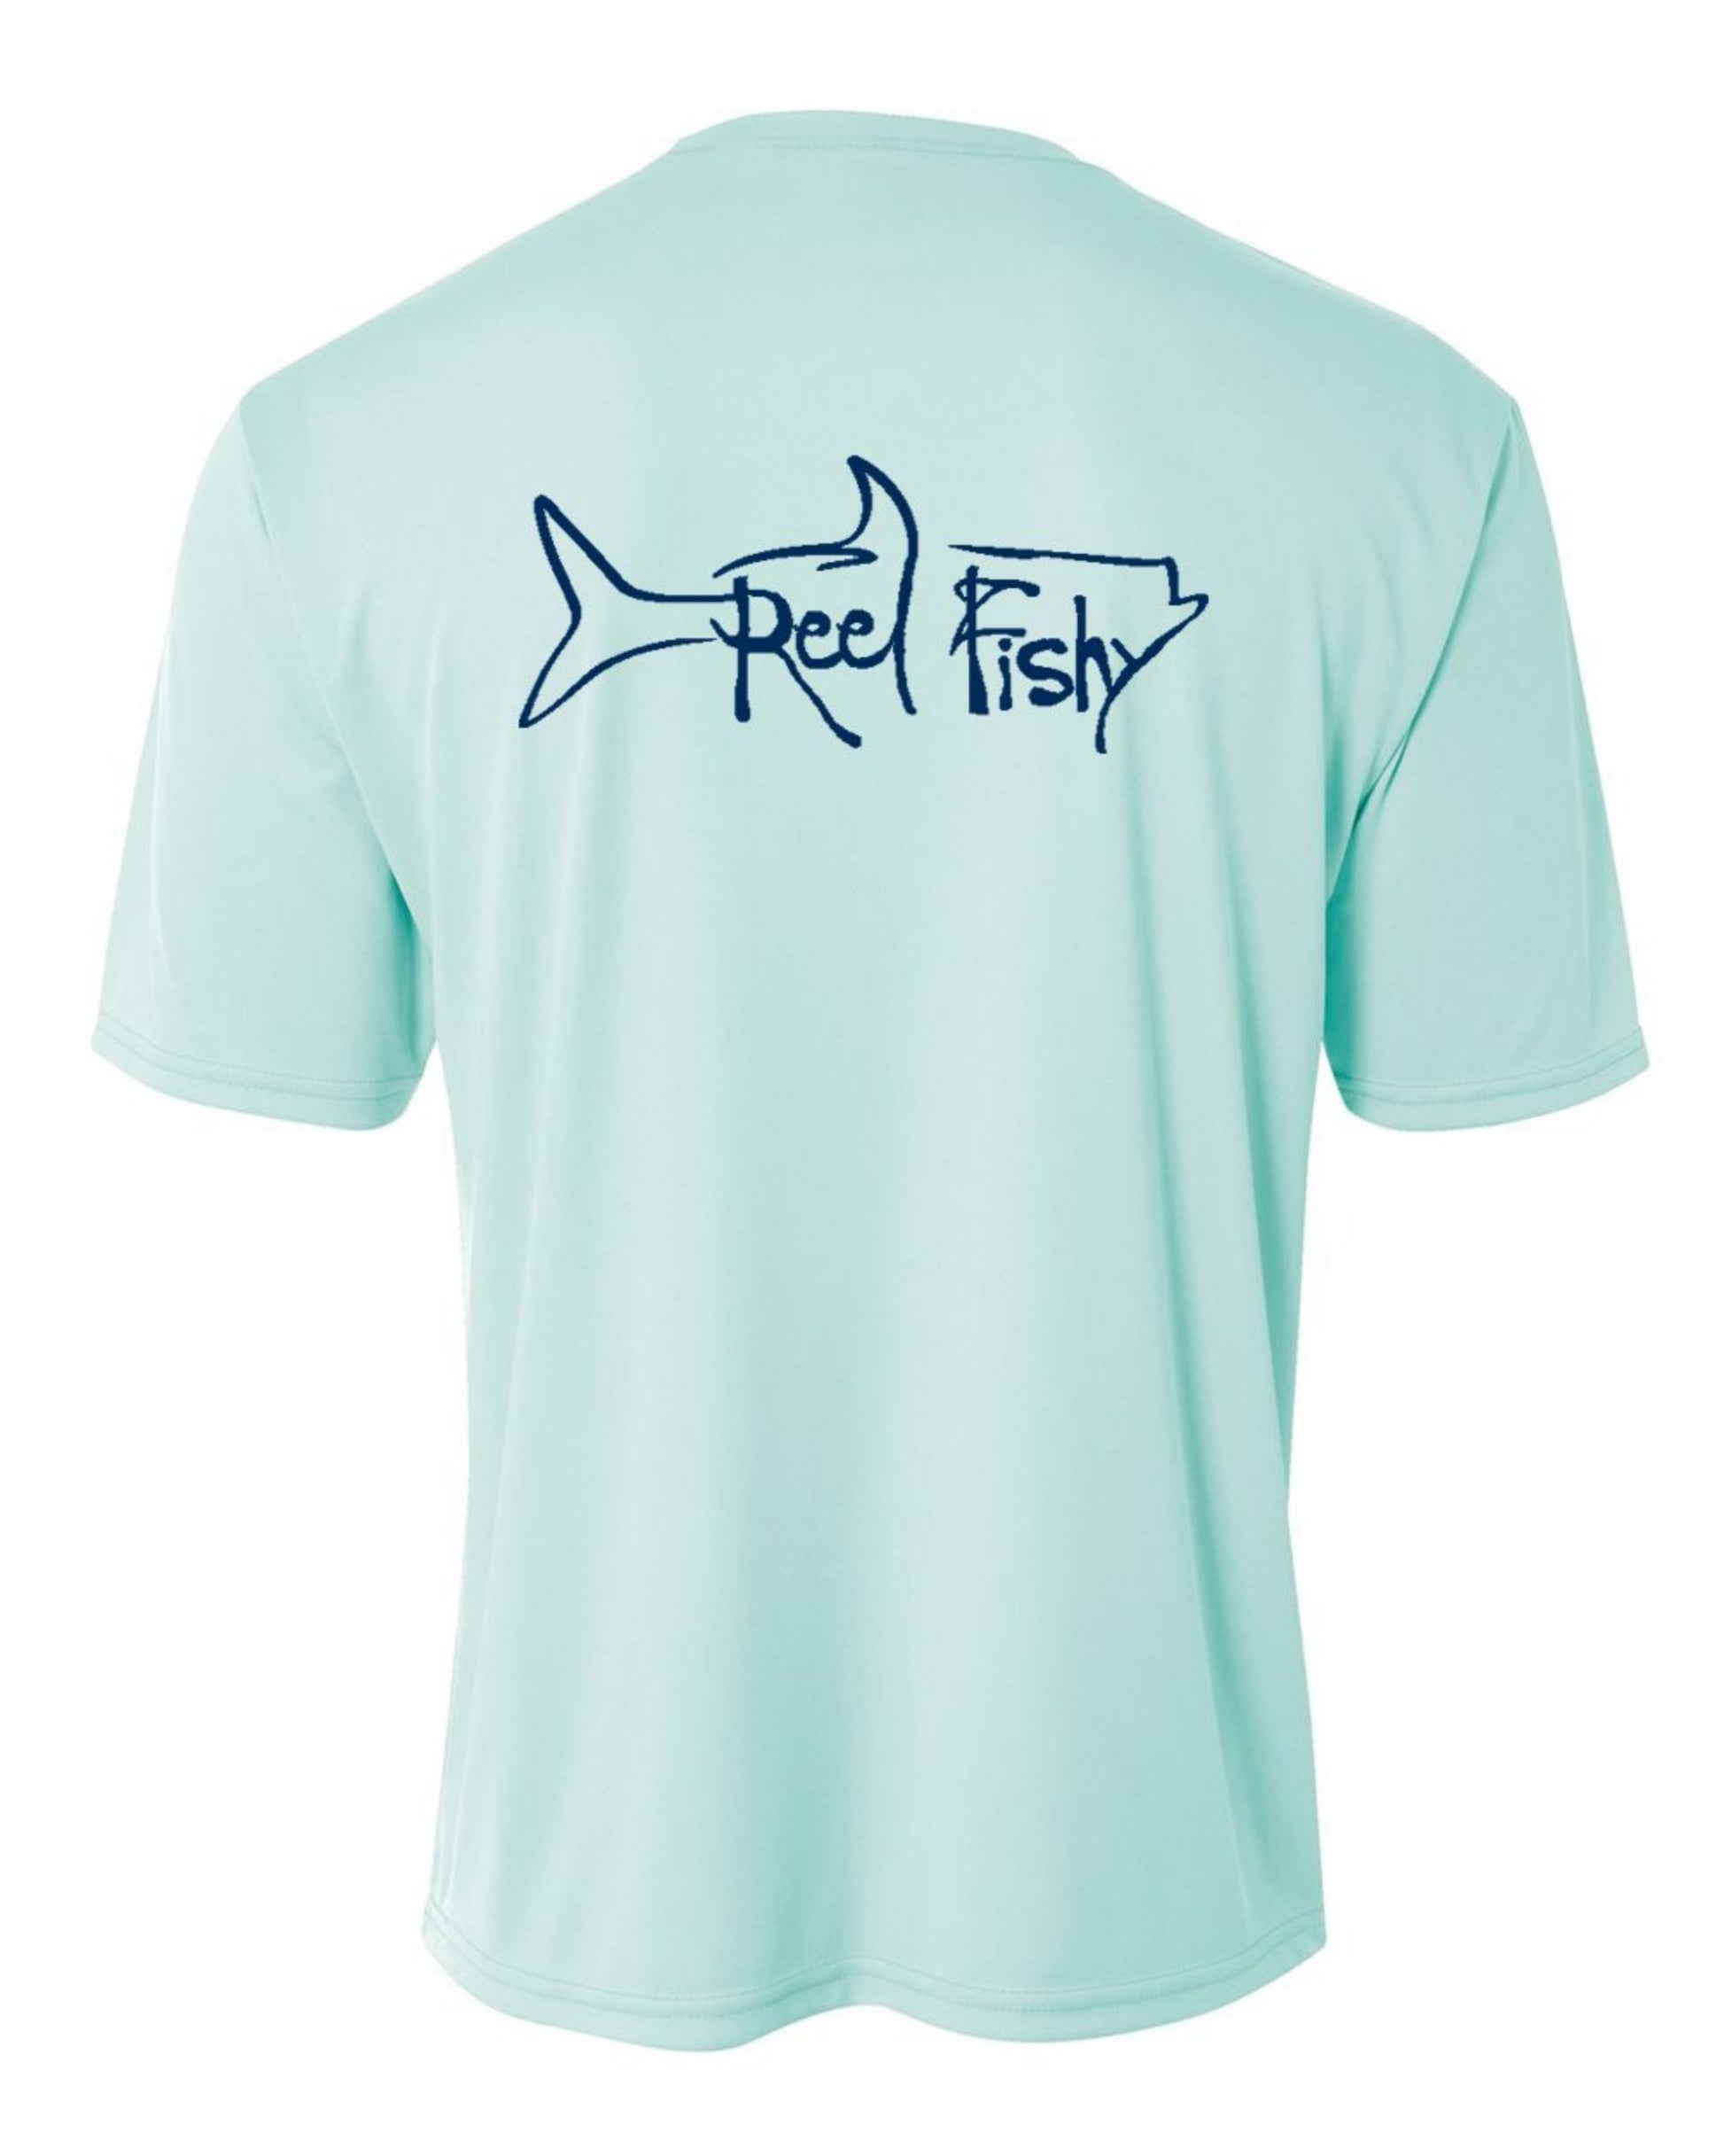 Reel life XL short sleeve fishing shirt